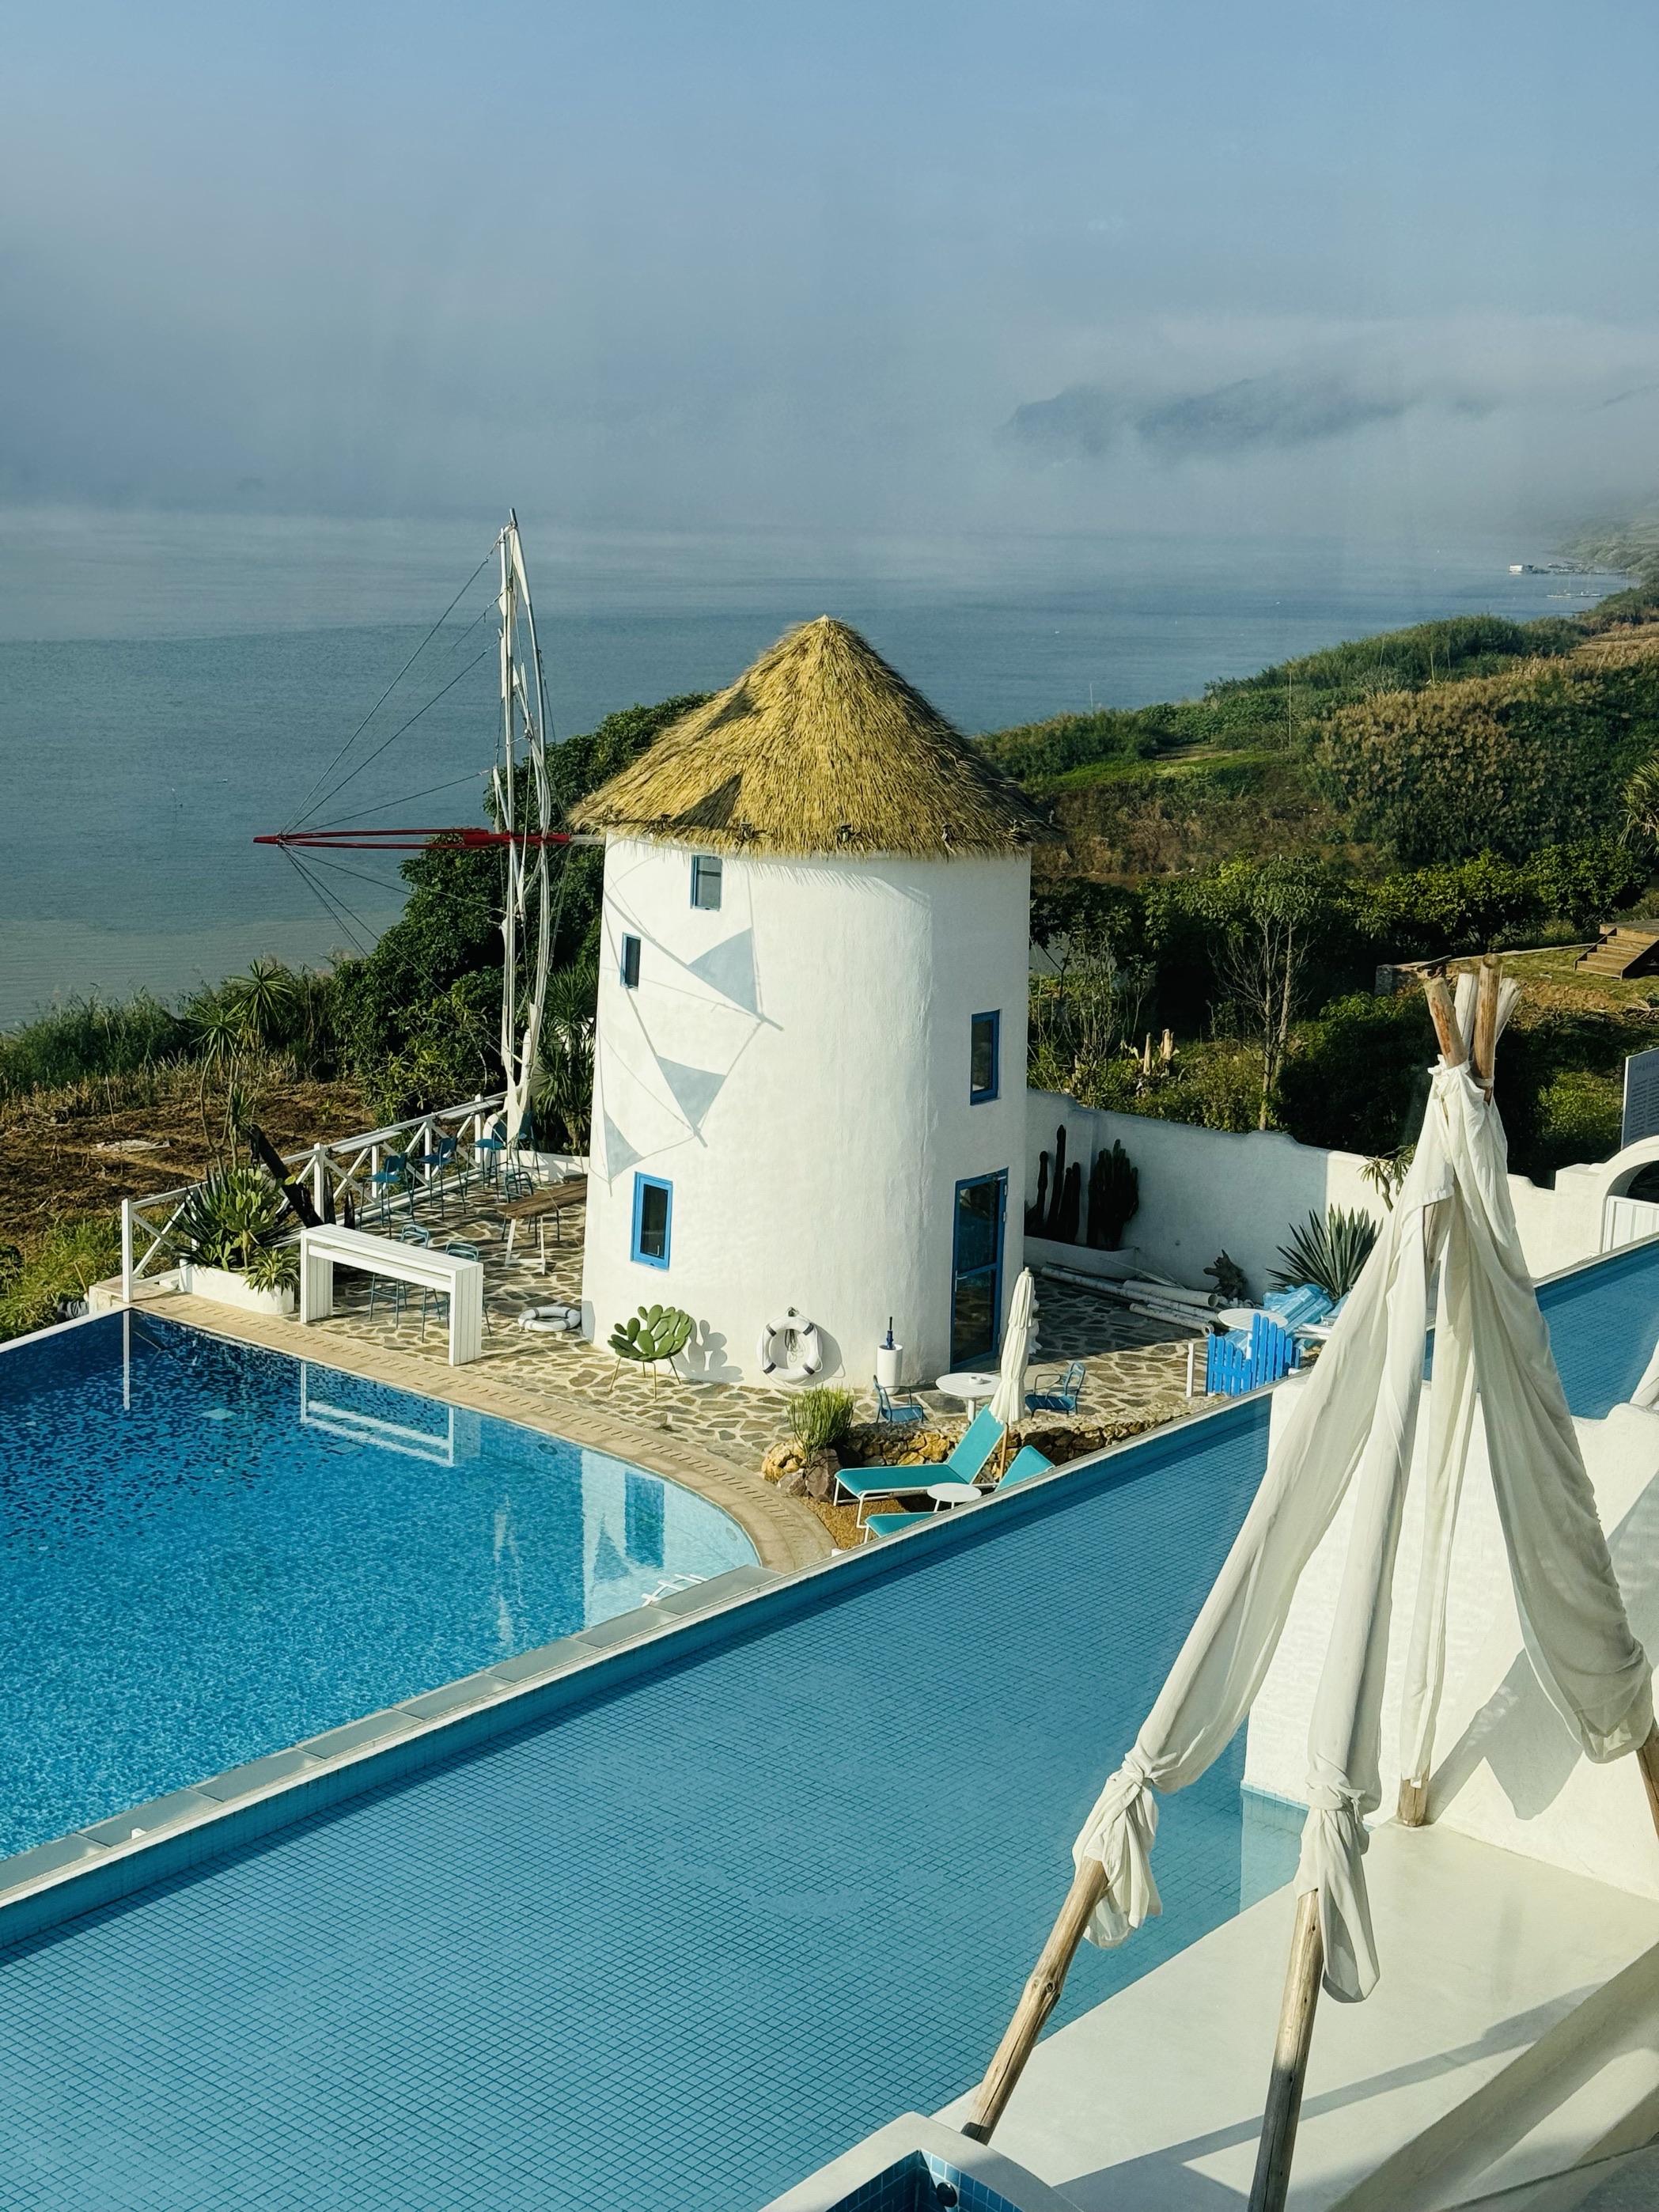 来到西江蓝岸民宿， 仿佛走进希腊地中海的仙境。 每个房间都是一份宁静的私人🔮花园， 一楼江景无边泳池